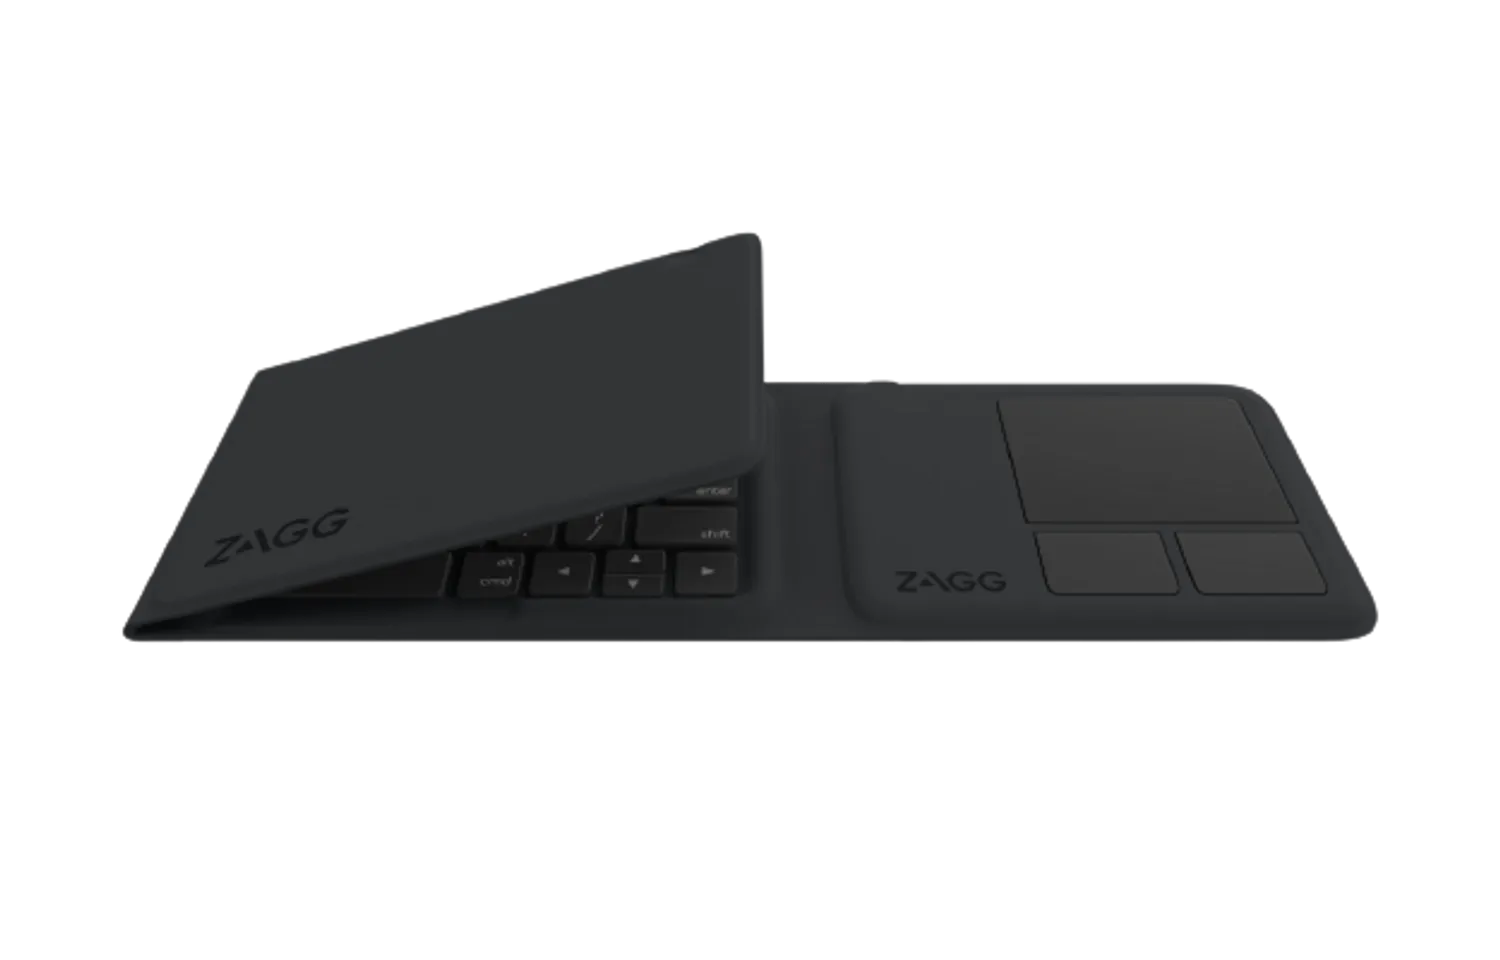 Bàn phím gấp 3 ZAGG Universal Keyboards Tri Folding